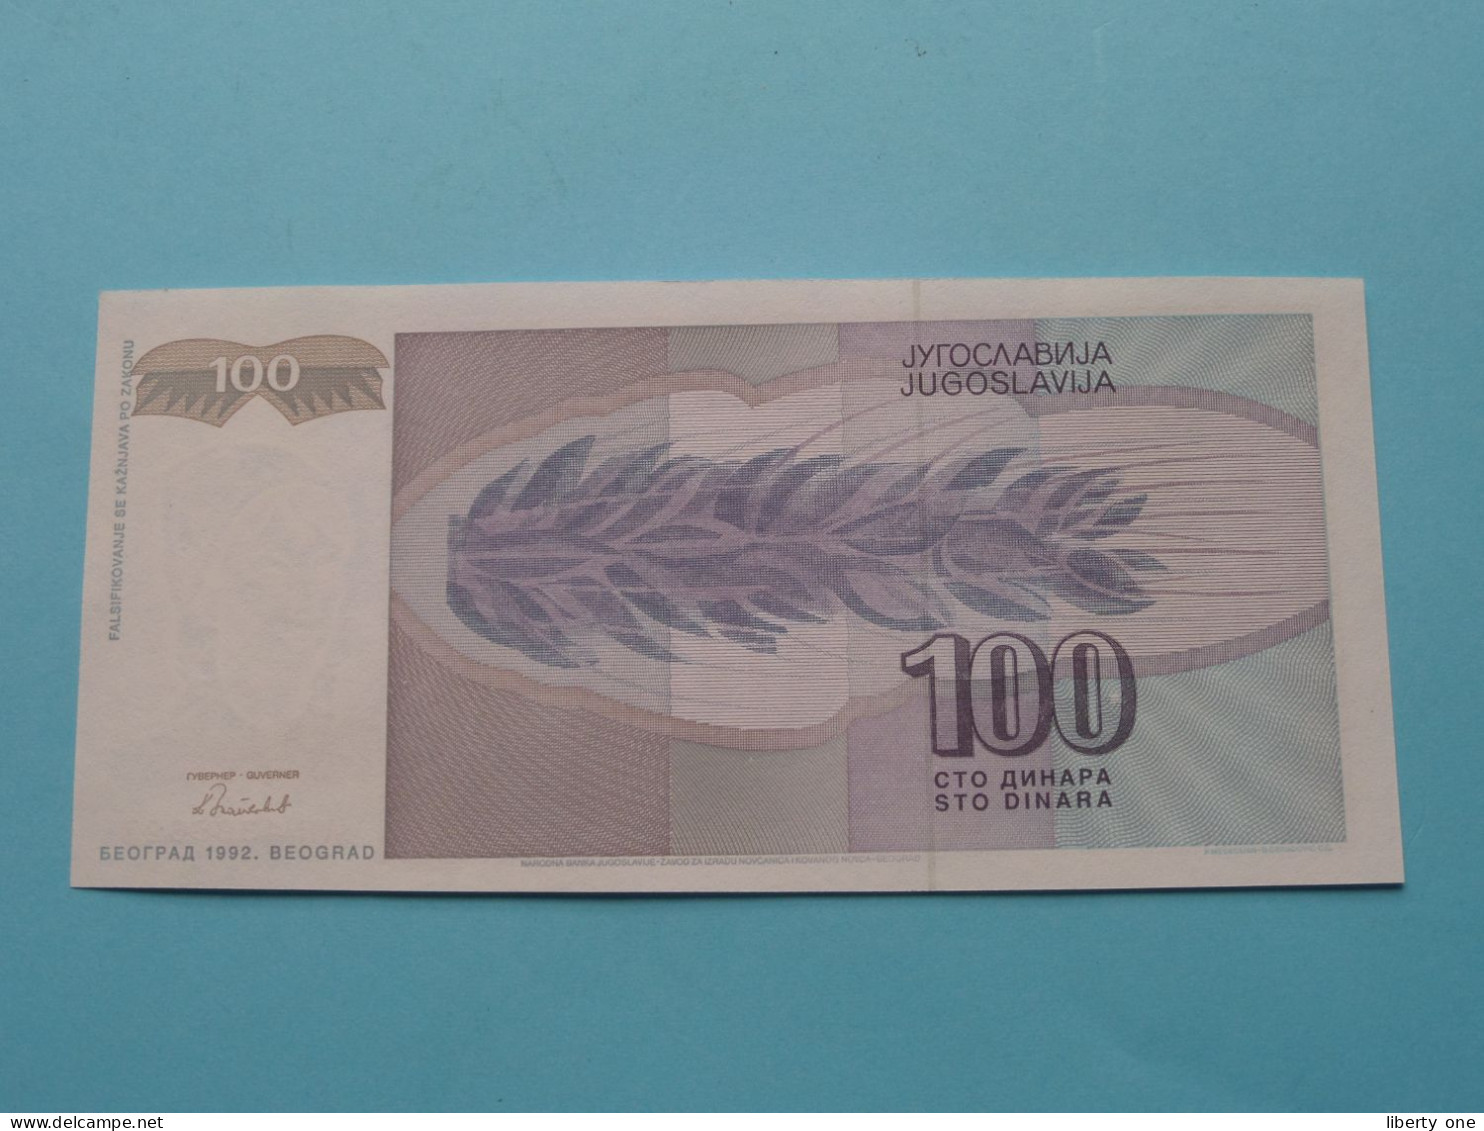 100 Dinara ( AH 4398627 ) Jugoslavije - 1992 ( For Grade See SCANS ) UNC ! - Yugoslavia